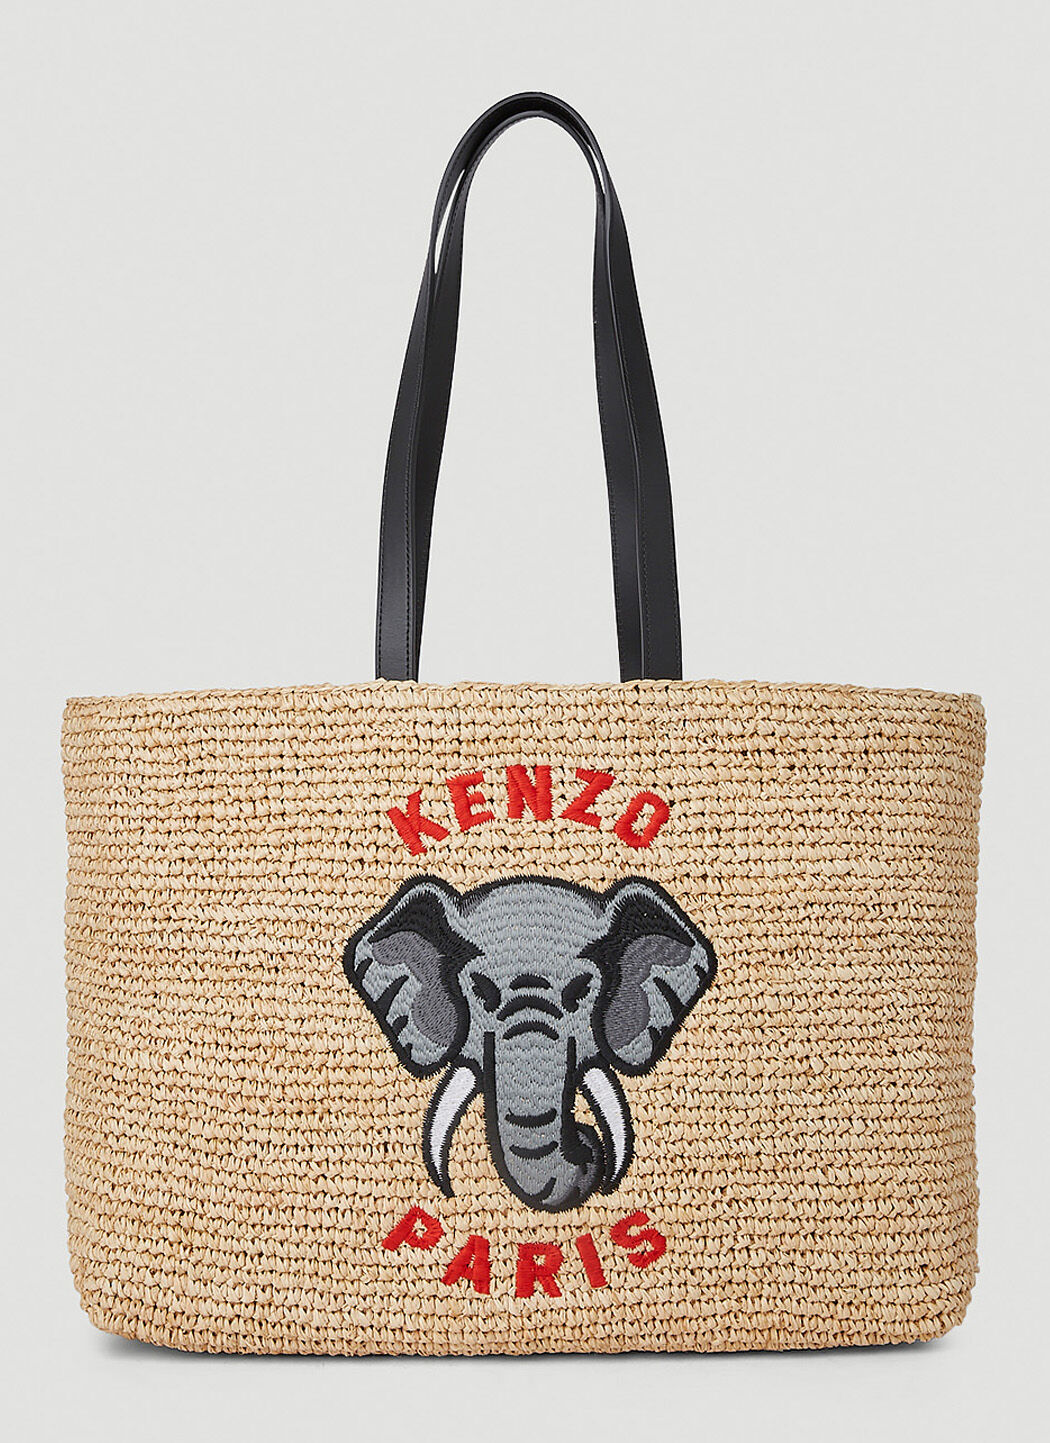 Kenzo Elephant Tote Bag in Beige | LN-CC®